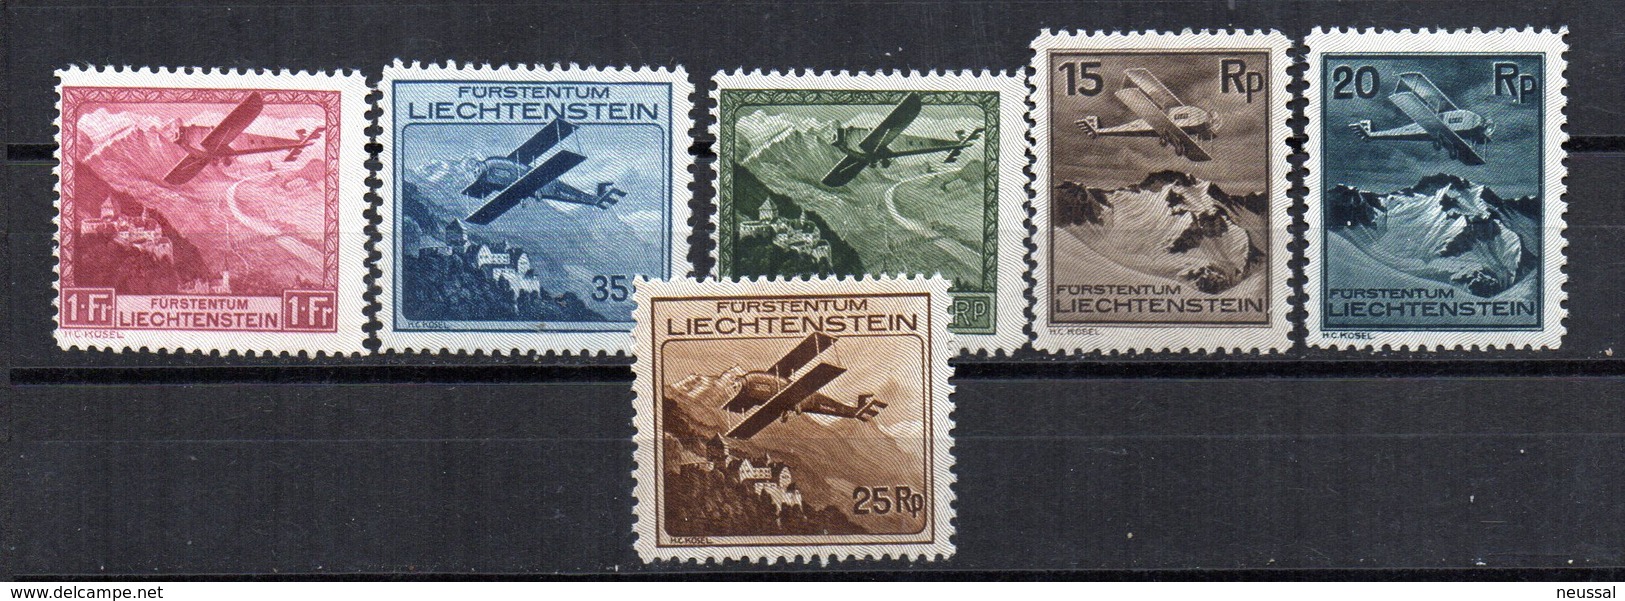 Serie Nº A-1/6 Liechtenstein - Poste Aérienne